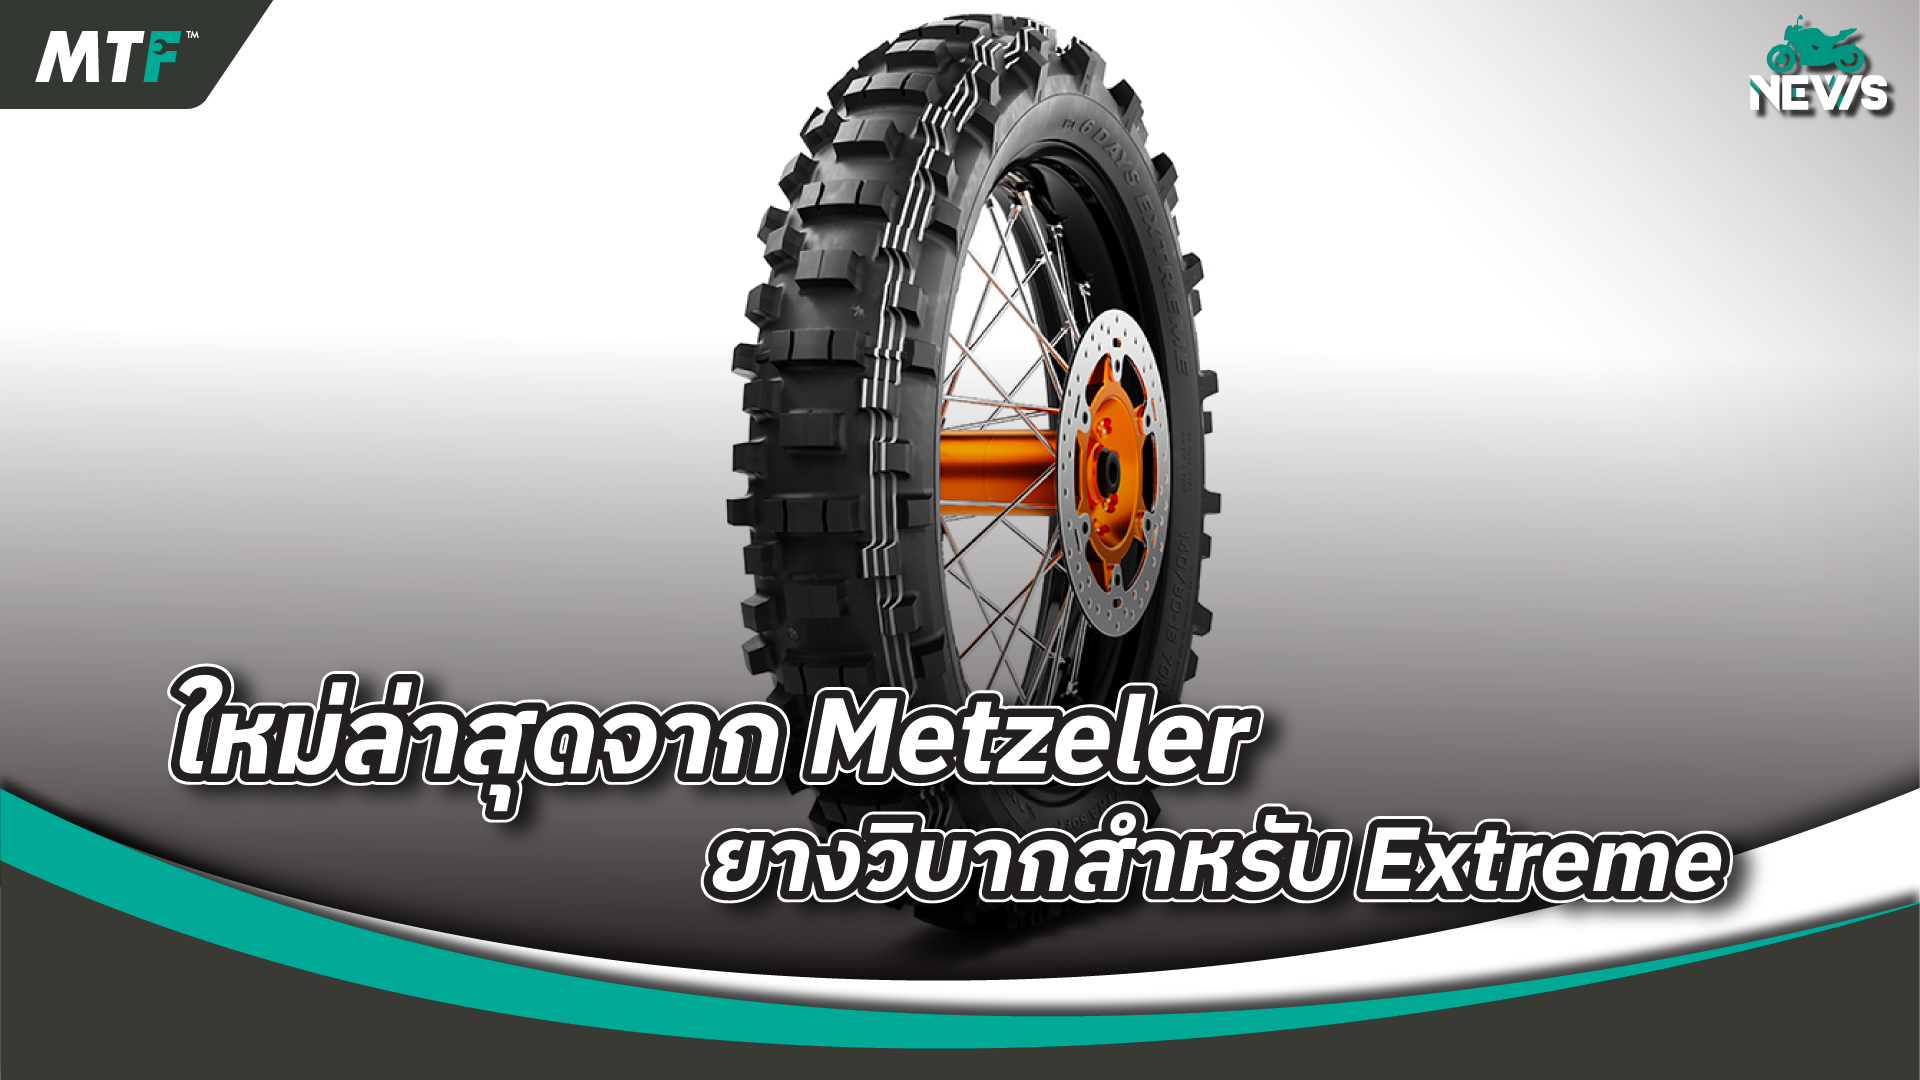 Metzeler MCE 6 Days Extreme Extra Soft ยางที่ถูกสร้างขึ้นเพื่อการขับขี่แบบ Extreme